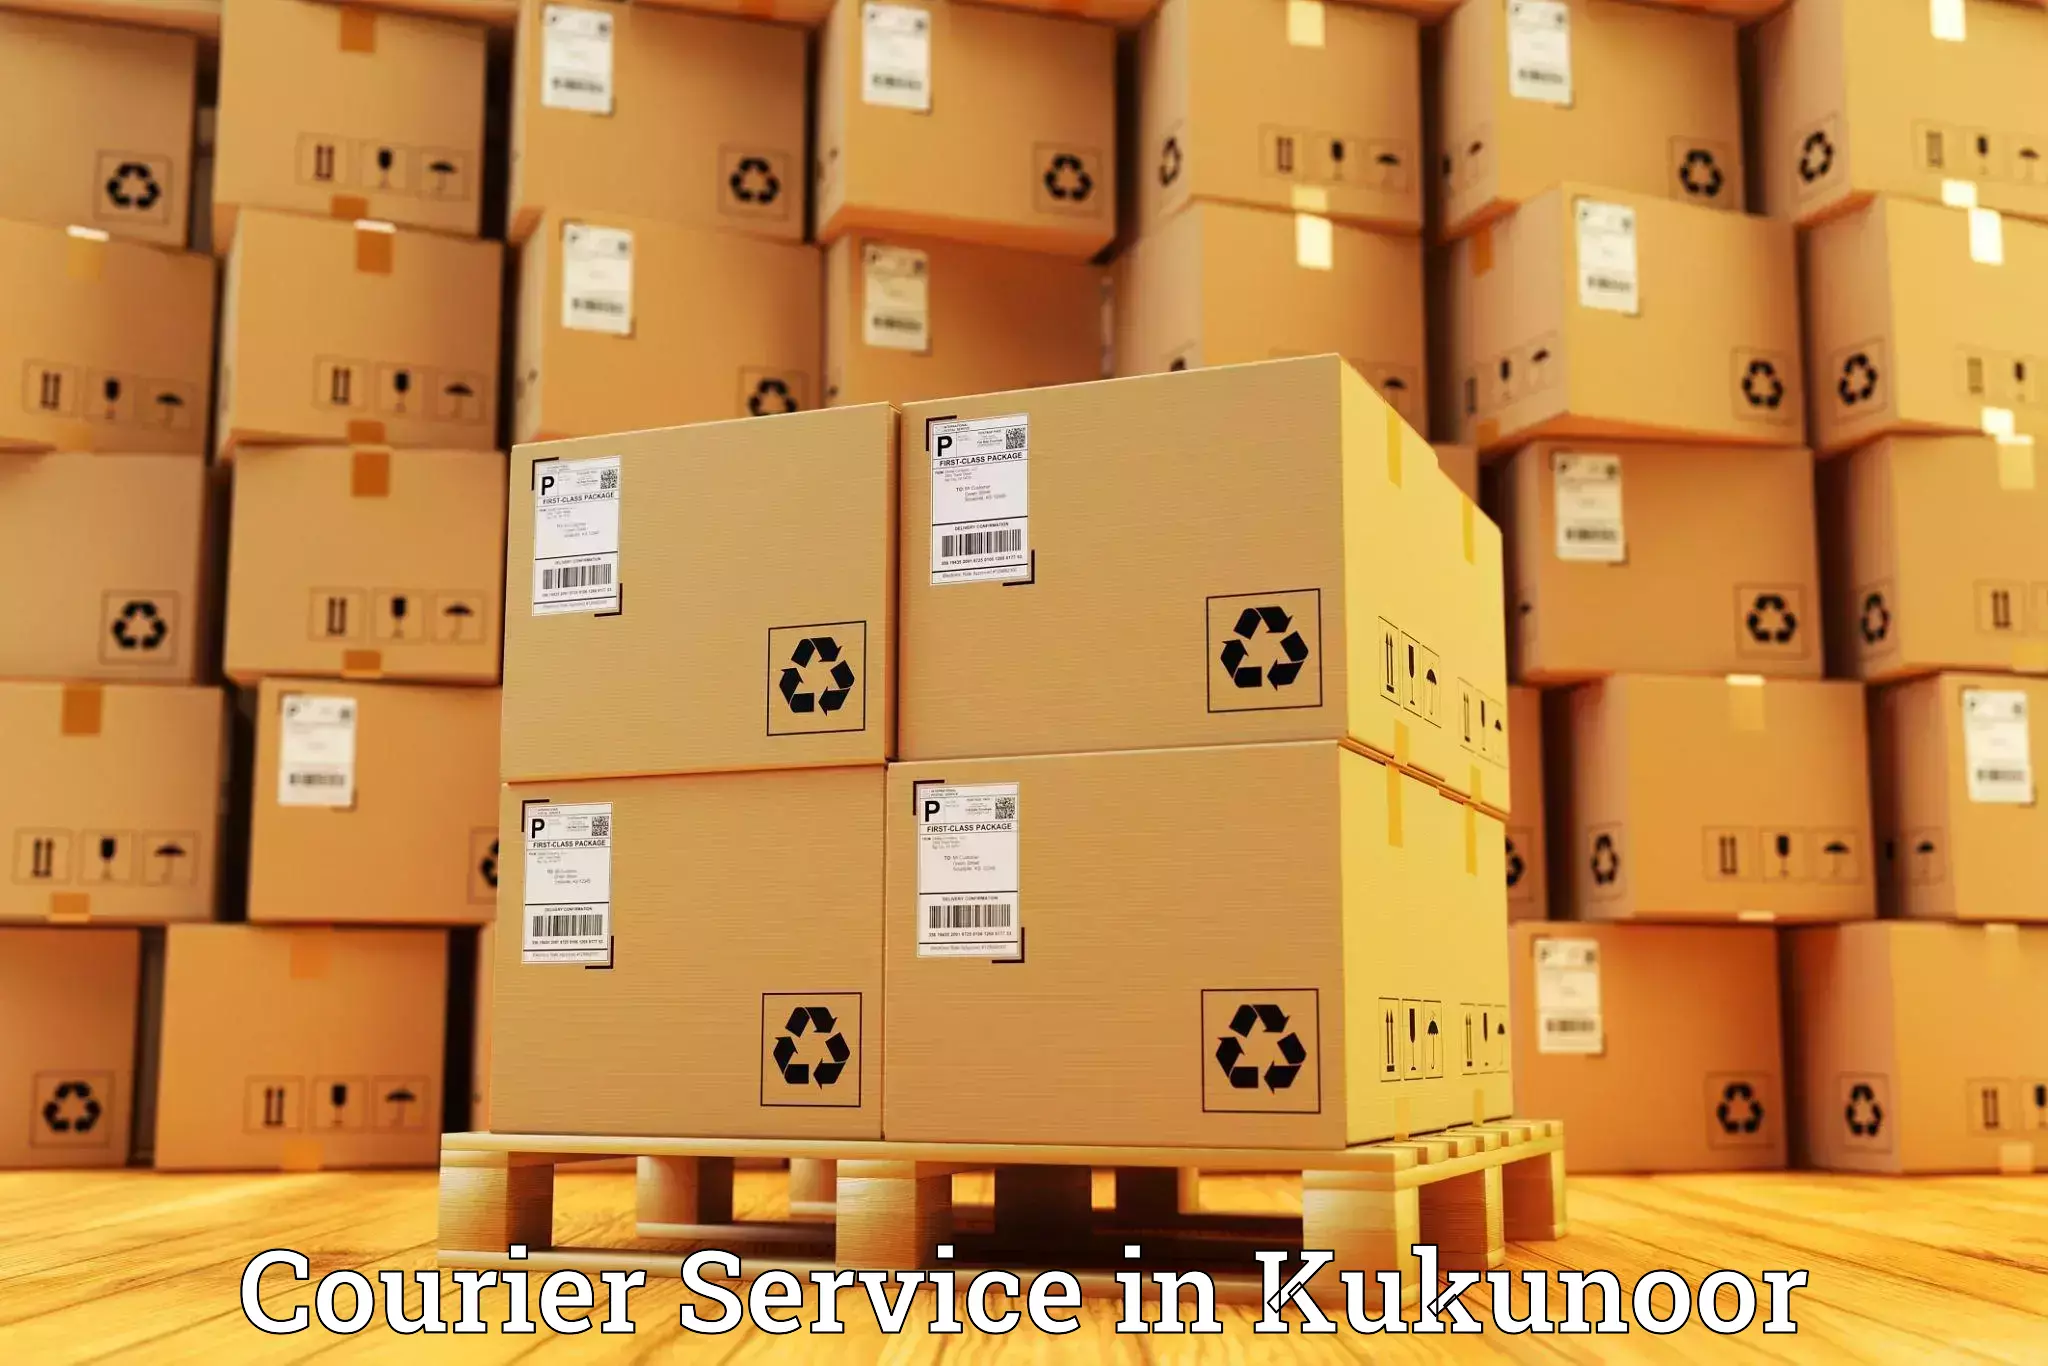 Logistics management in Kukunoor